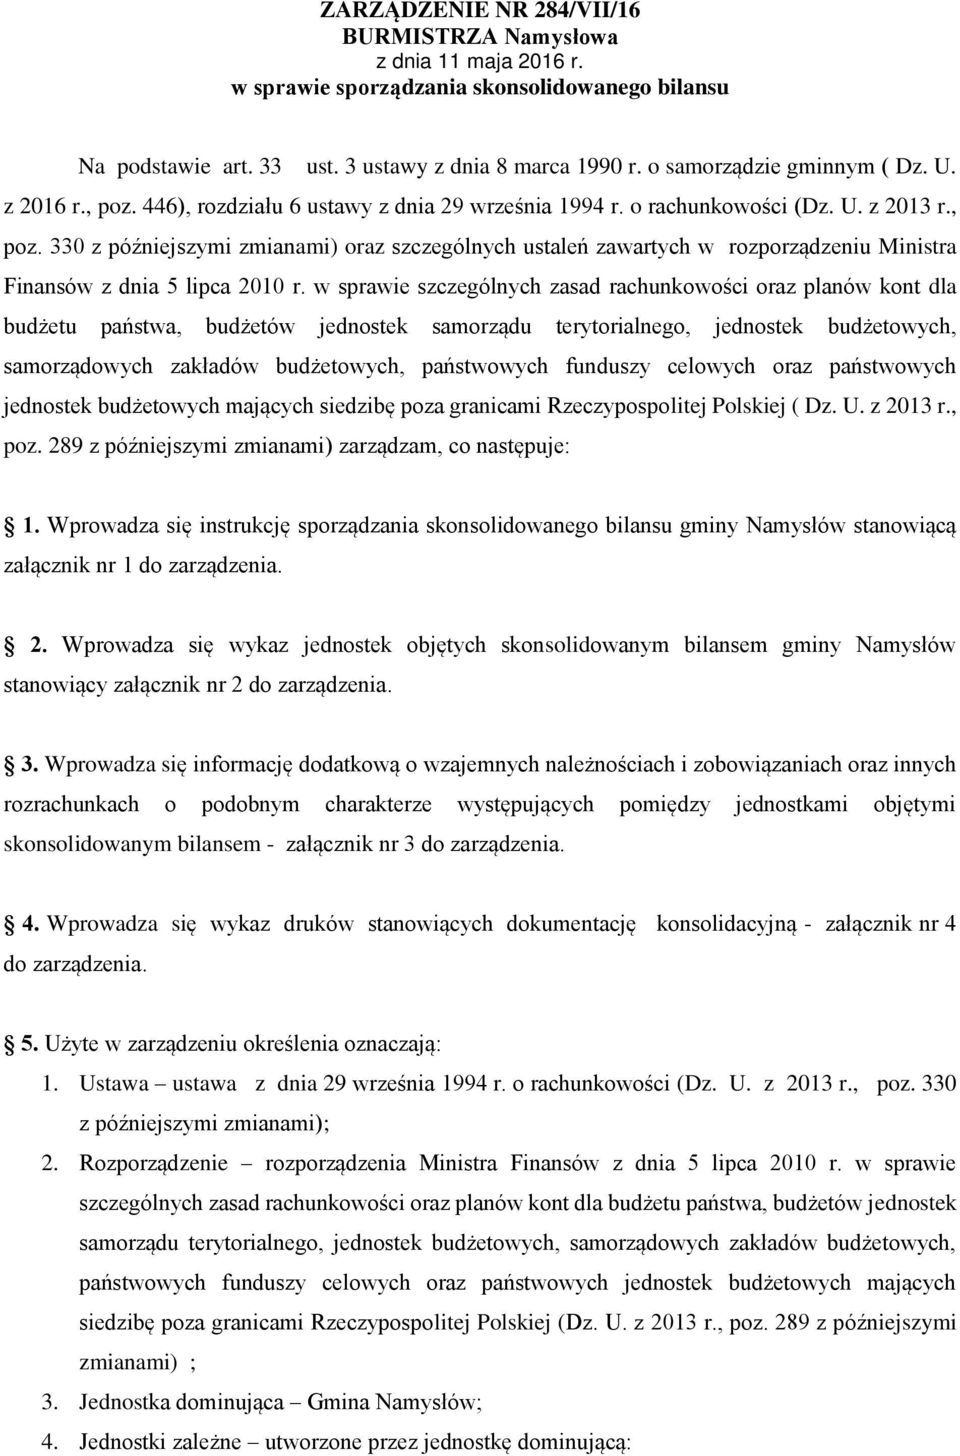 330 z późniejszymi zmianami) oraz szczególnych ustaleń zawartych w rozporządzeniu Ministra Finansów z dnia 5 lipca 2010 r.